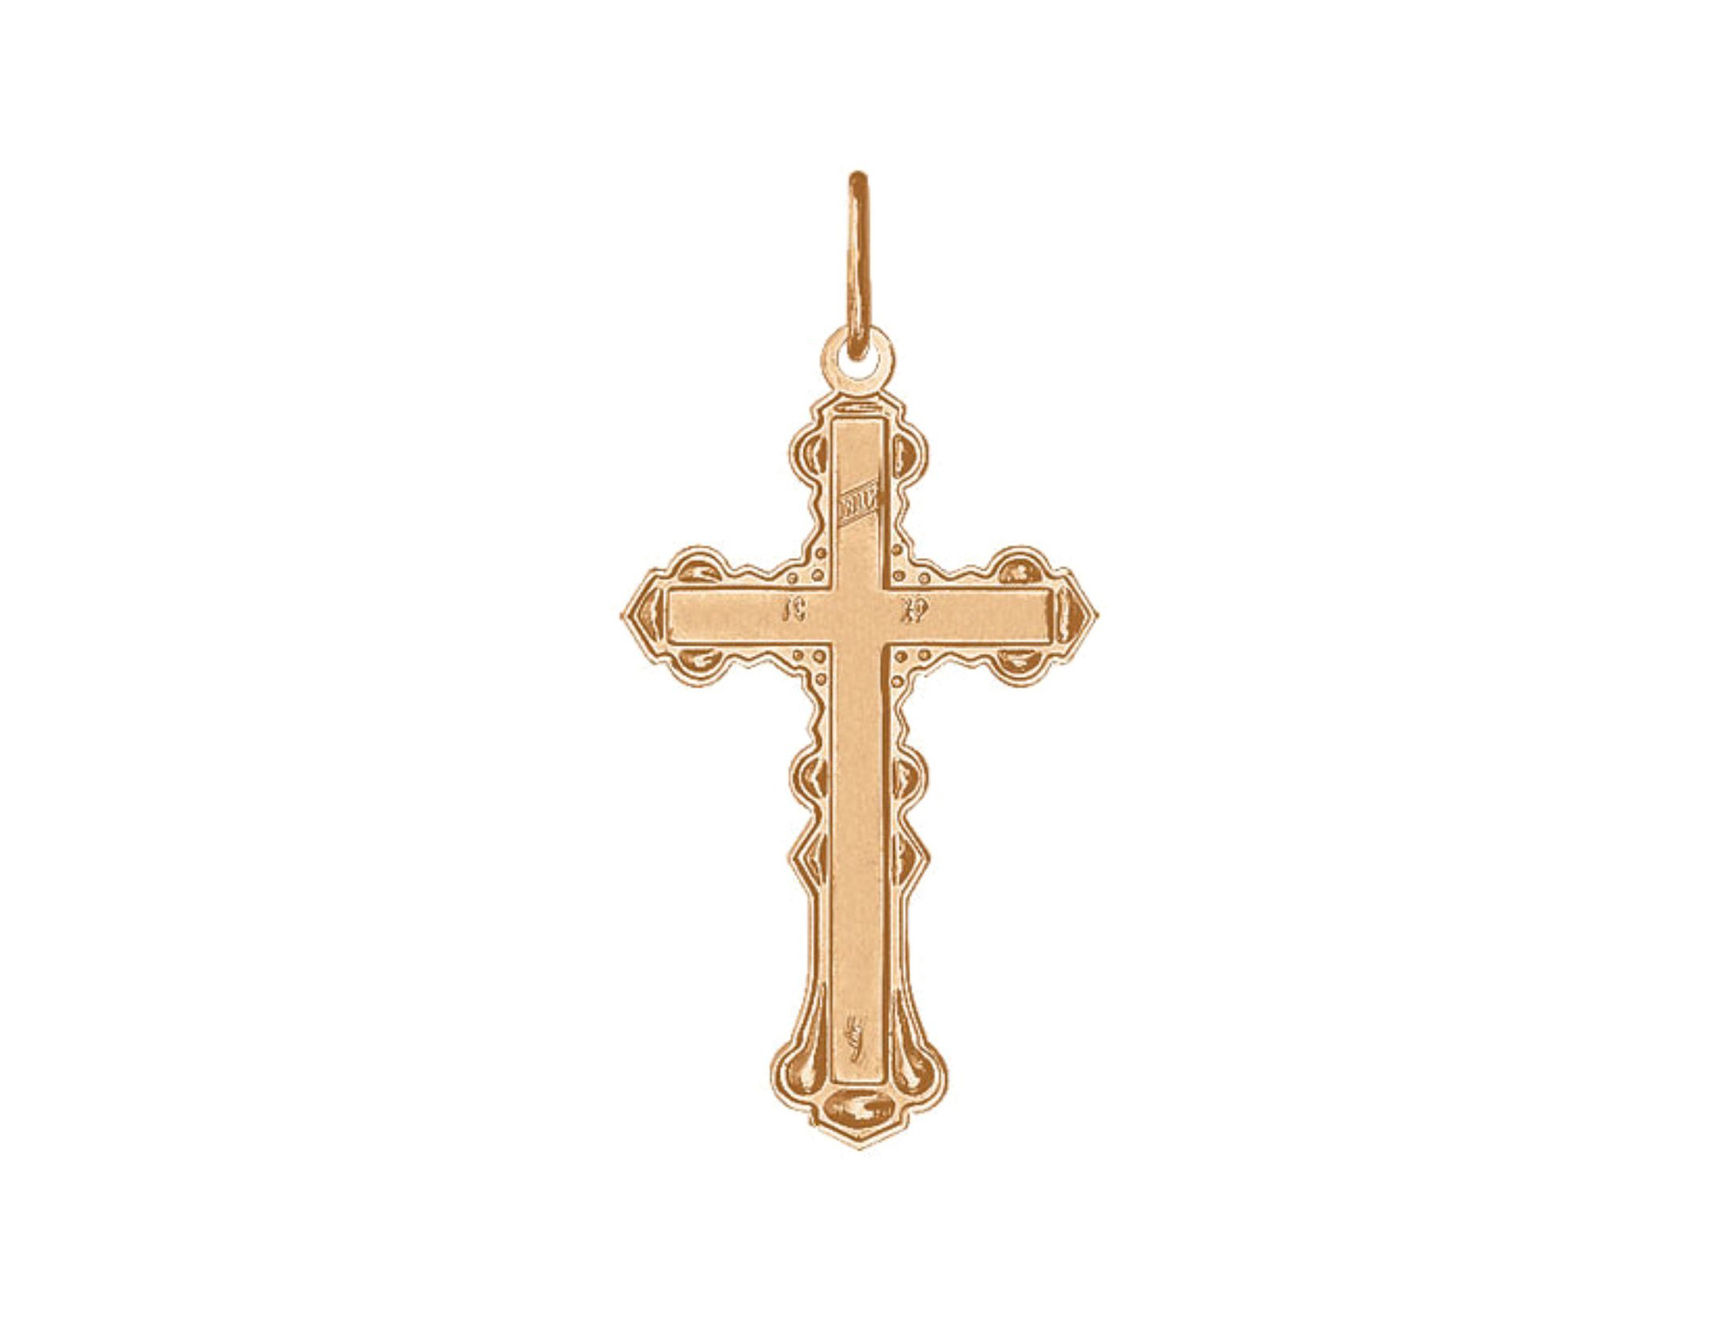 Крестик нательный №2, золотой. SOKOLOV католический нательный крестик 93120034. Ц5110-330 крест Империал. Православный крест.